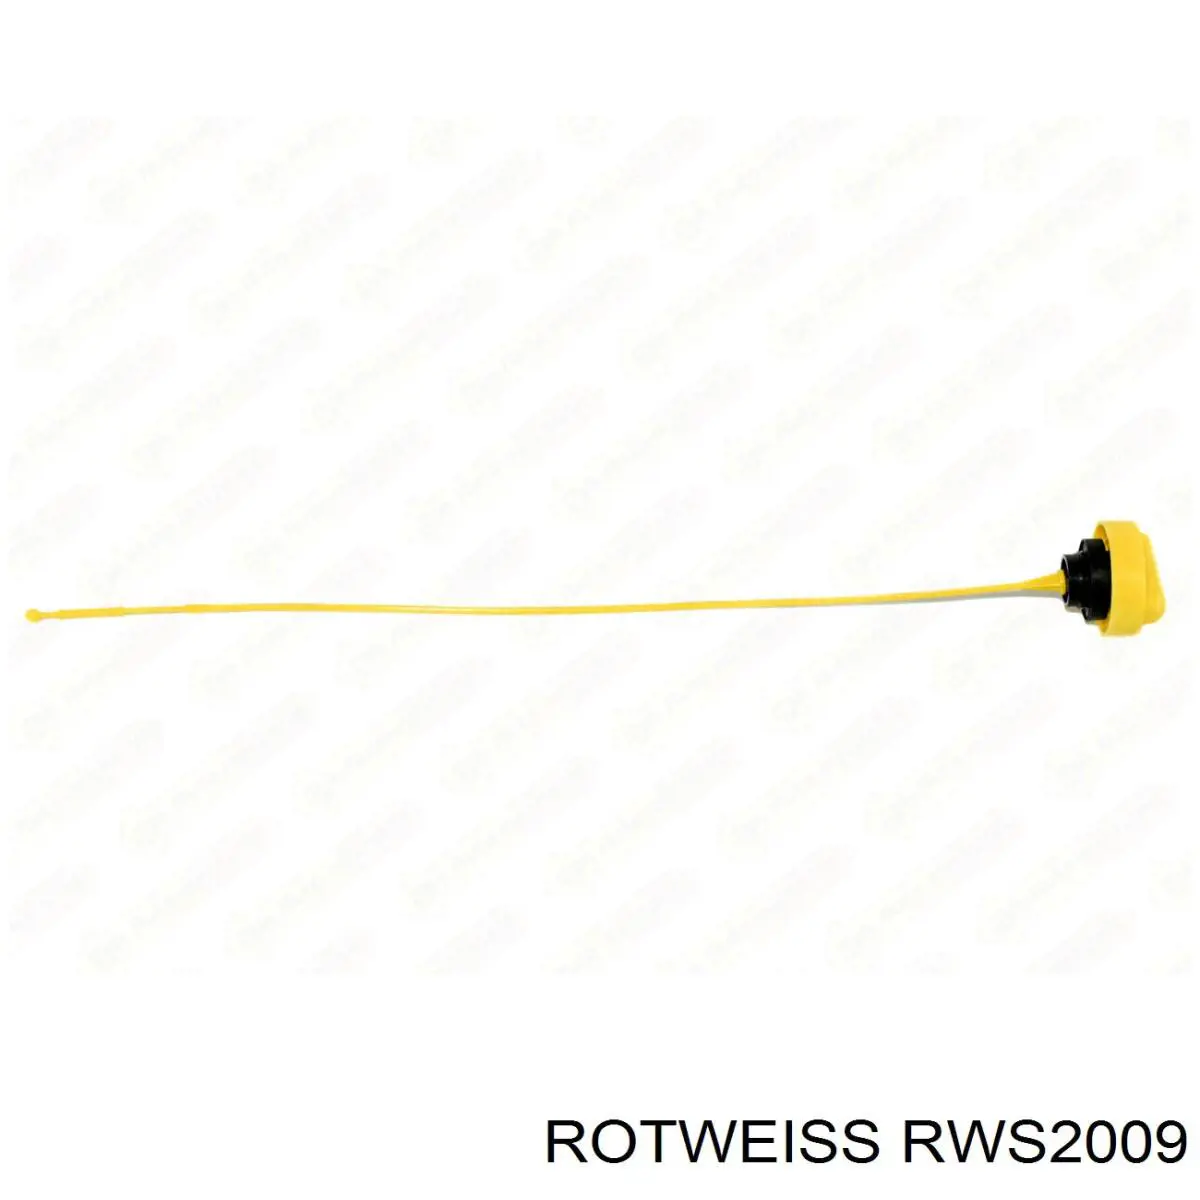 RWS2009 Rotweiss tapa de aceite de motor